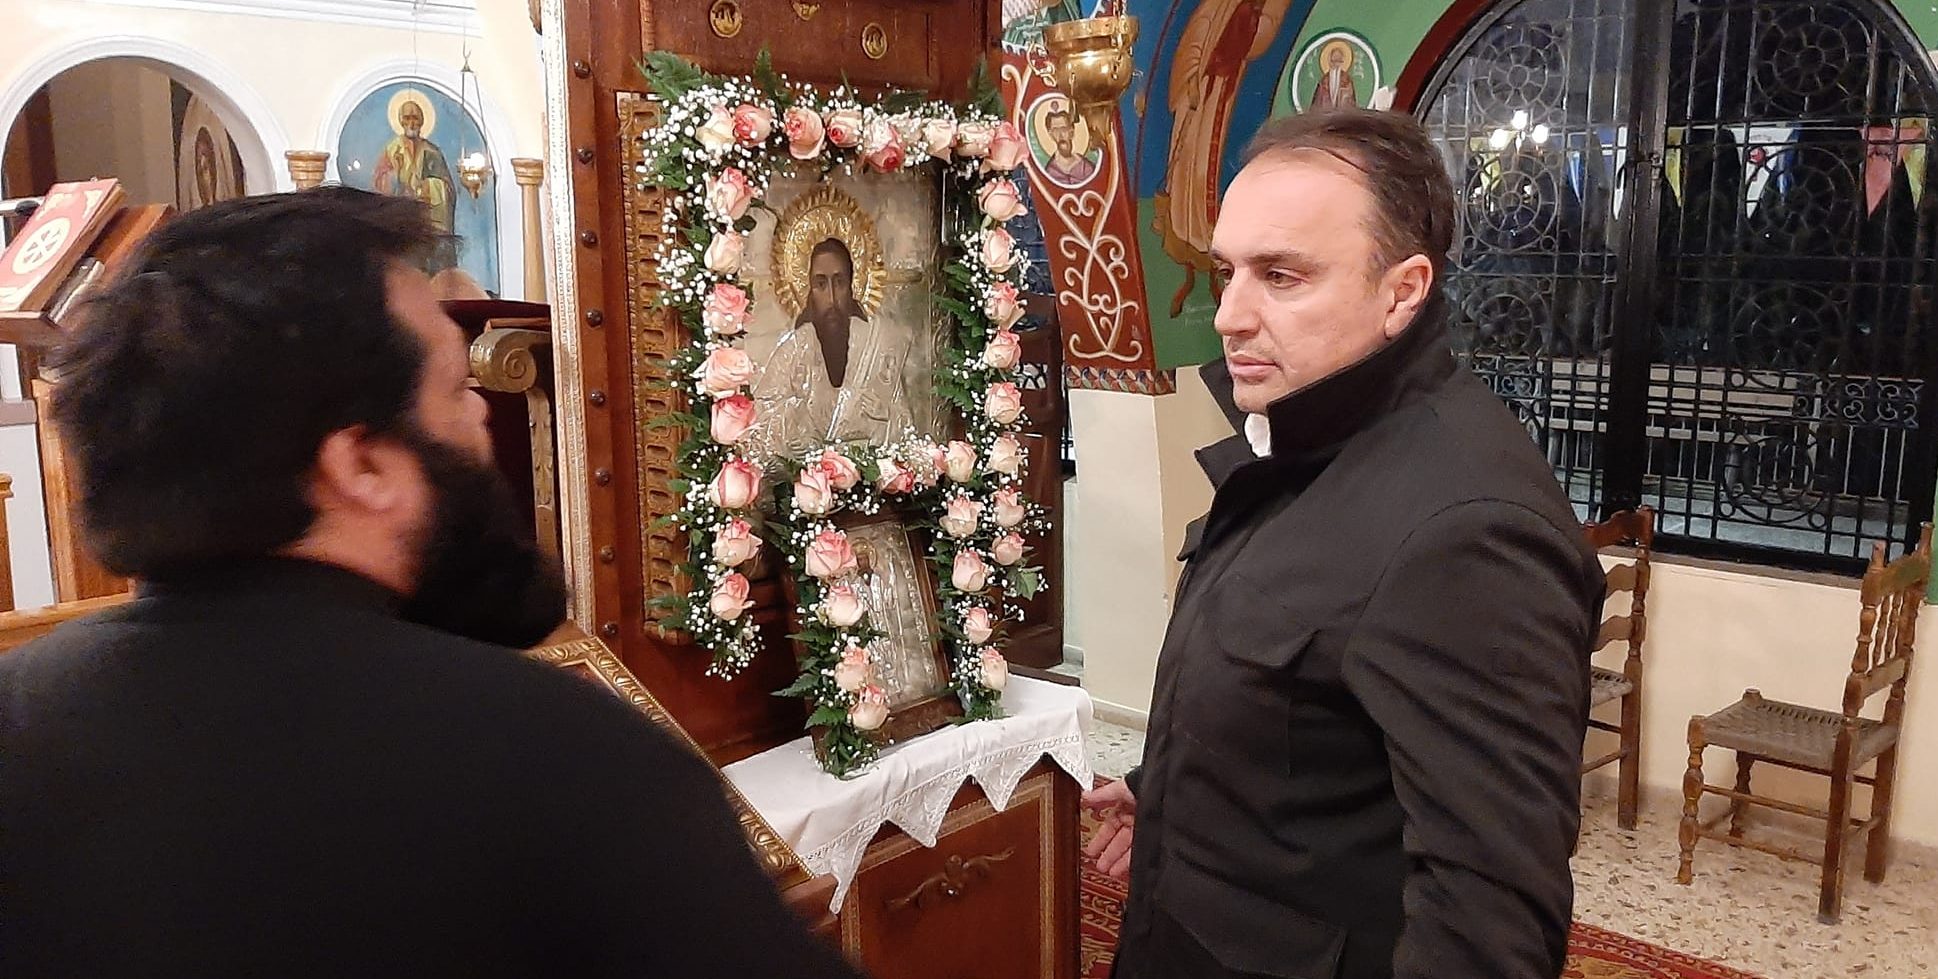 Εύβοια: Σε ποιο ιστορικό ναό βρέθηκε την παραμονή της Πρωτοχρονιάς ο δήμαρχος Ιστιαίας Αιδηψού